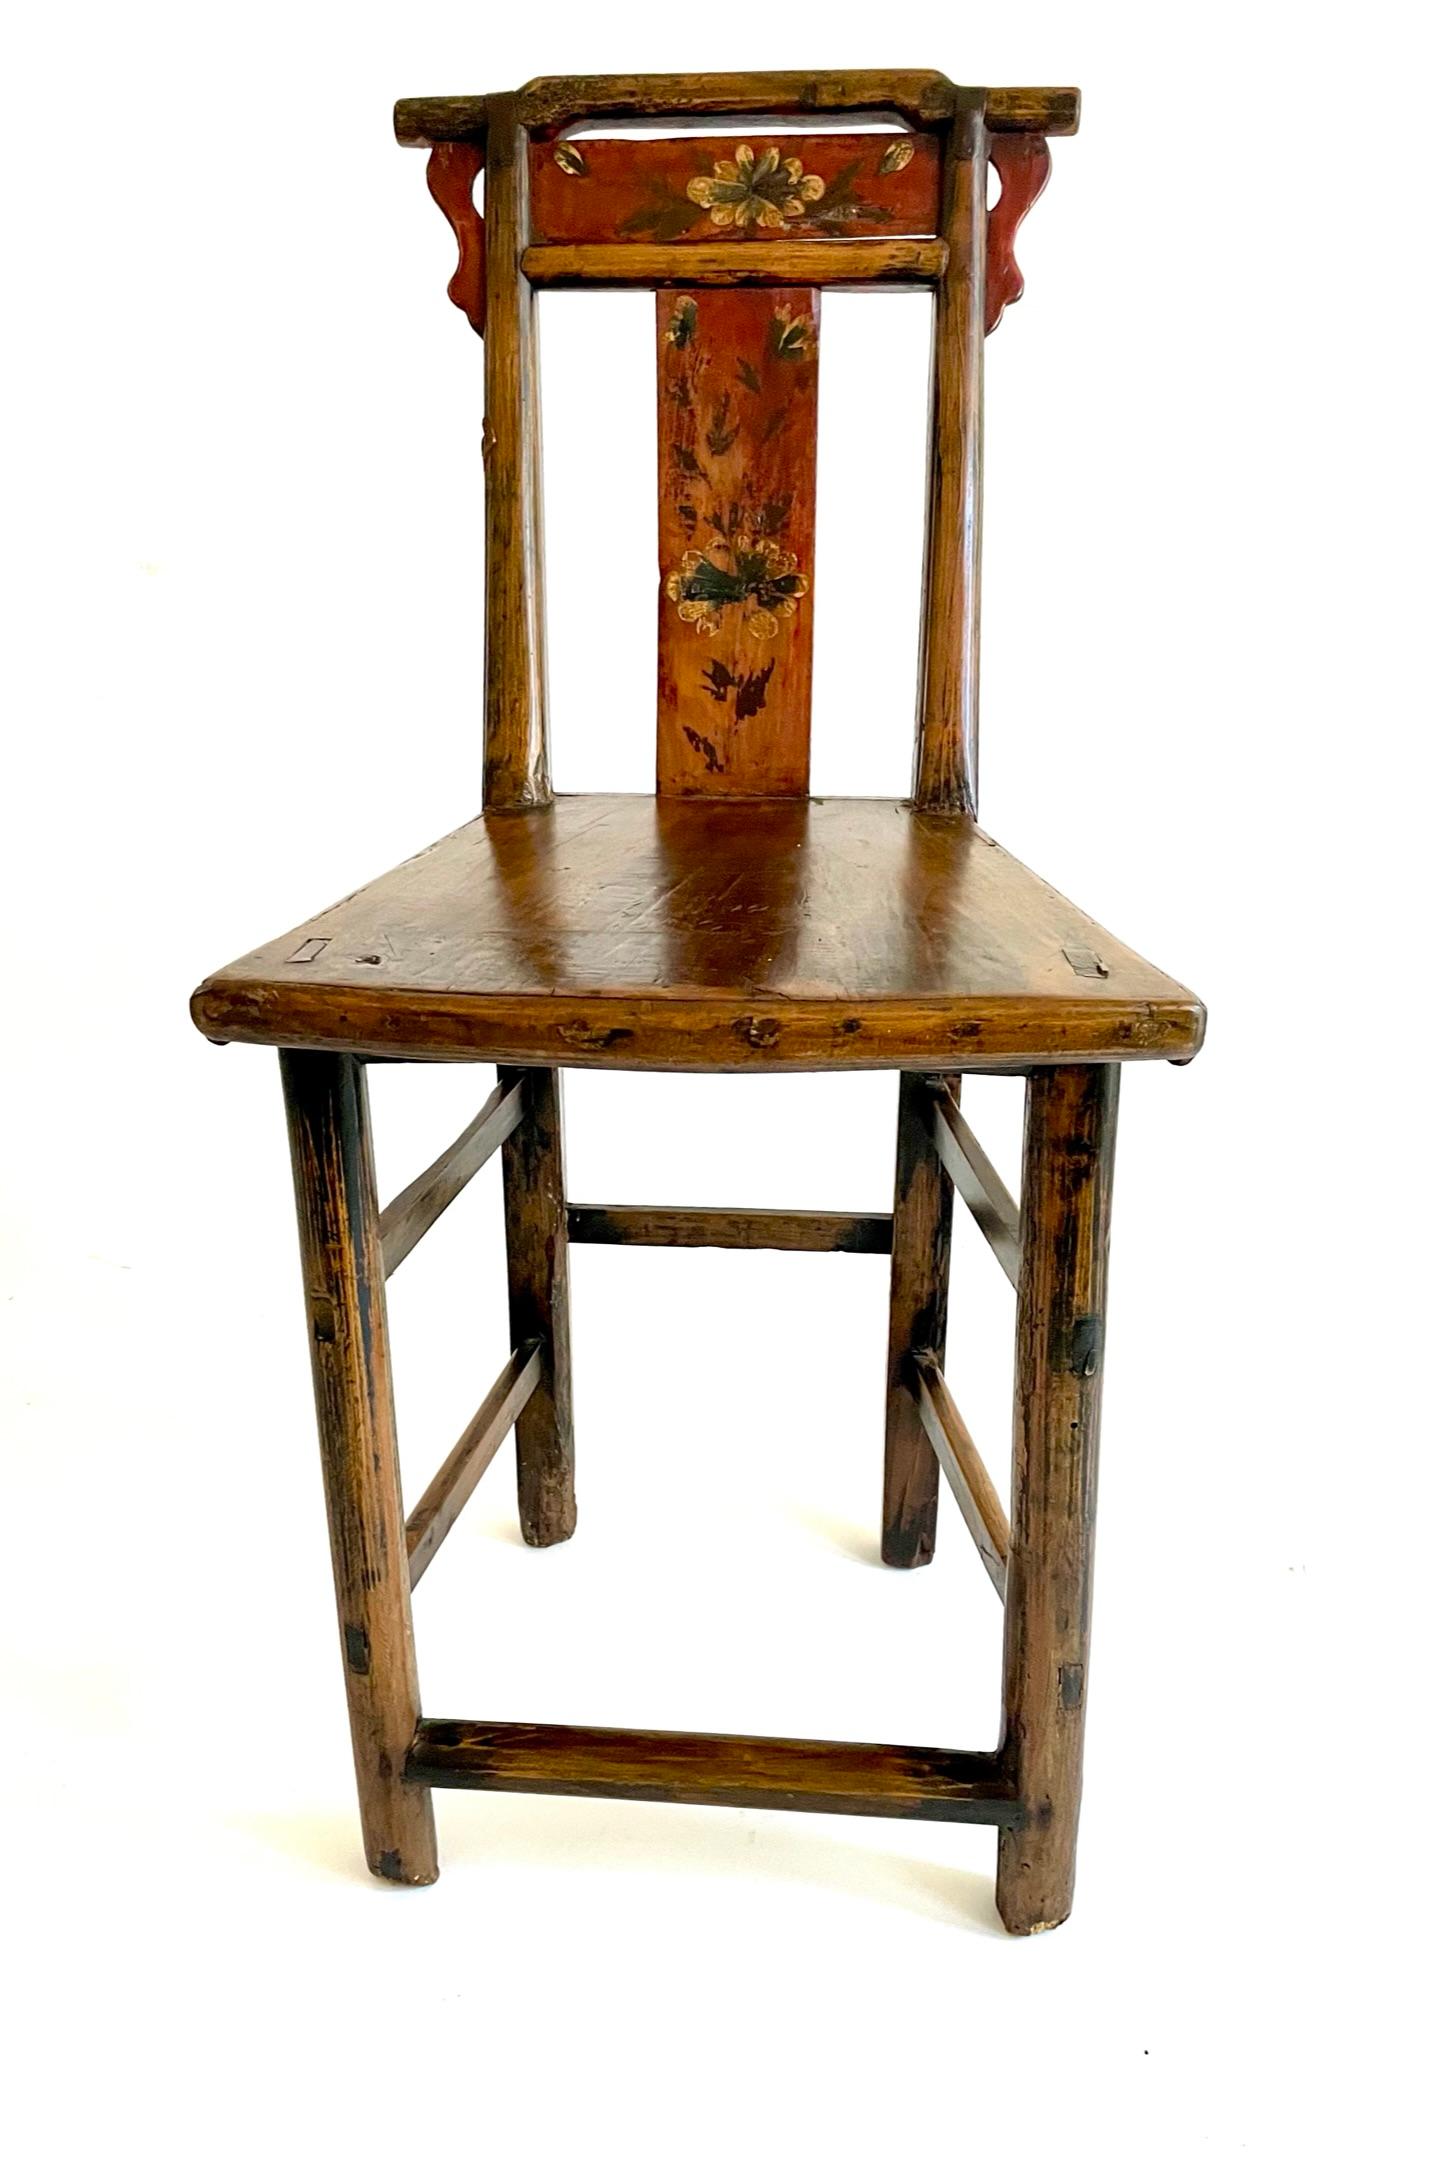 Dies ist ein ungewöhnliches Paar bemalter chinesischer Stühle aus dem späten 18. Die Rückenlehne ist mit einem floralen Muster bemalt, das an die Volkskunst erinnert. Die Form der Sitzfläche ist eine geometrische Fächerform. Diese Stühle stammen aus